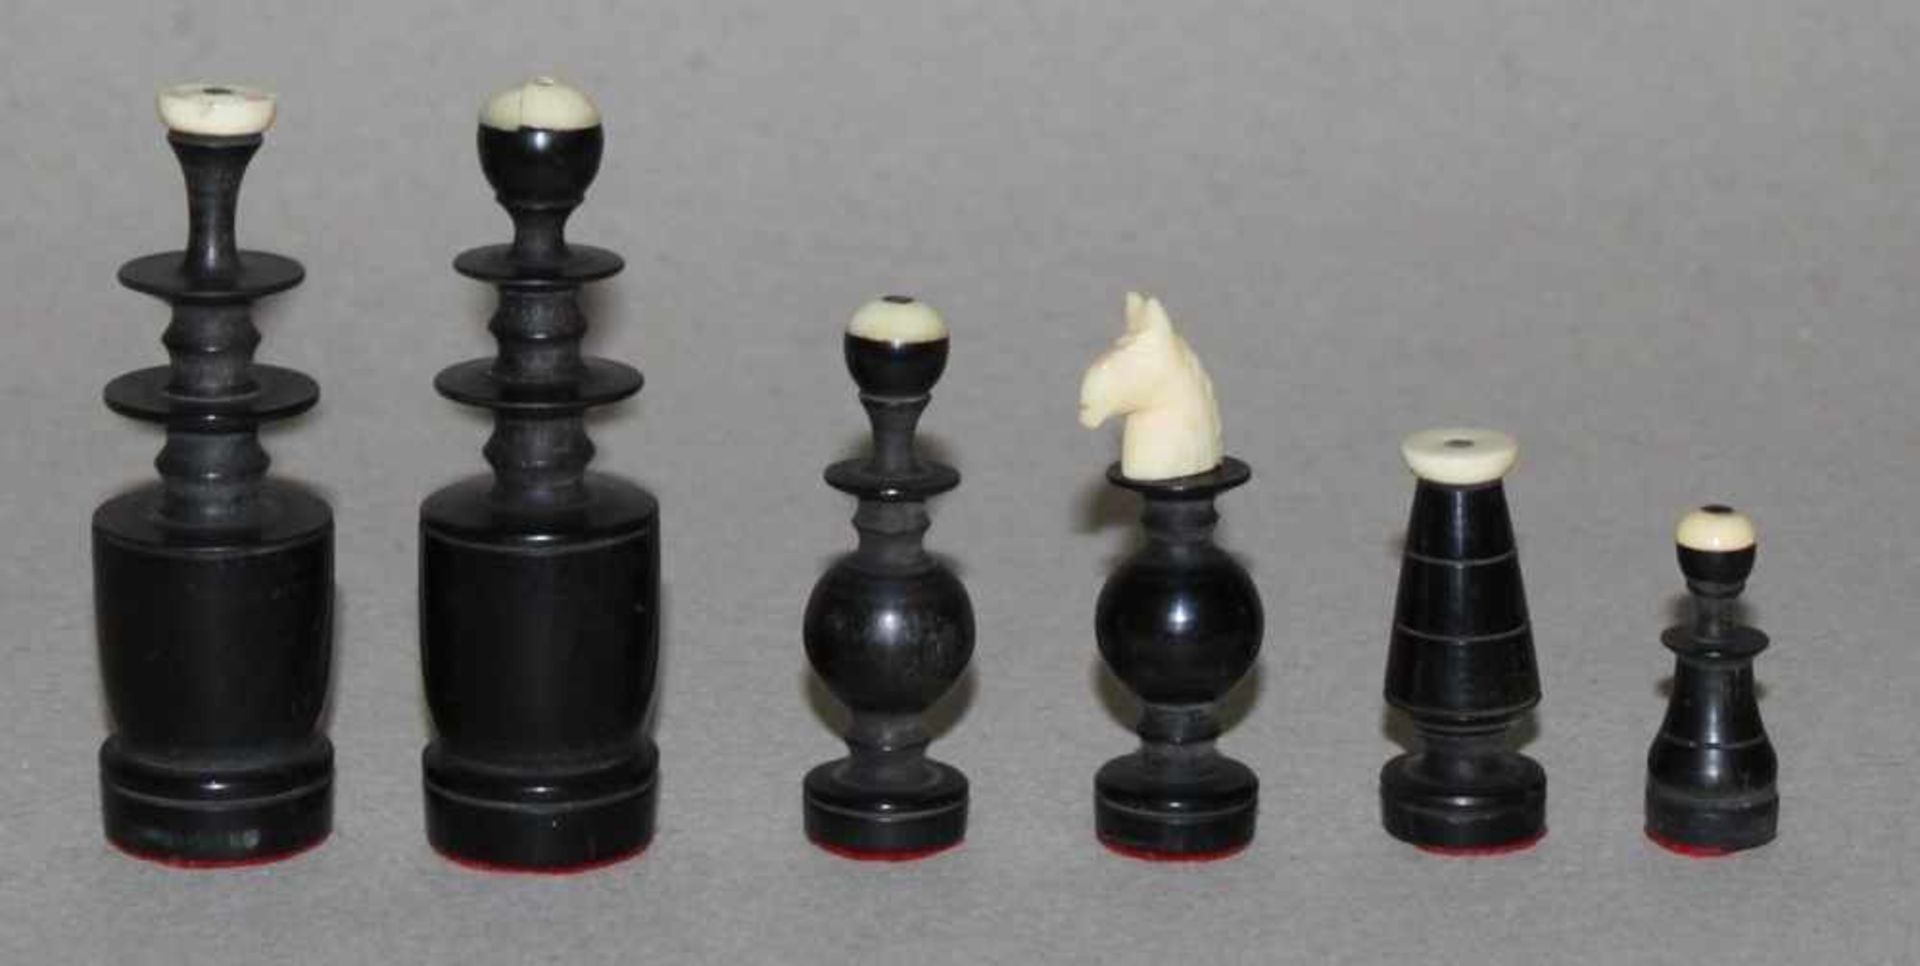 Asien. Vietnam. Schachfiguren aus Hornmit Spielkasten aus Holz. Spielfiguren in schwarz, eine Partei - Bild 2 aus 3